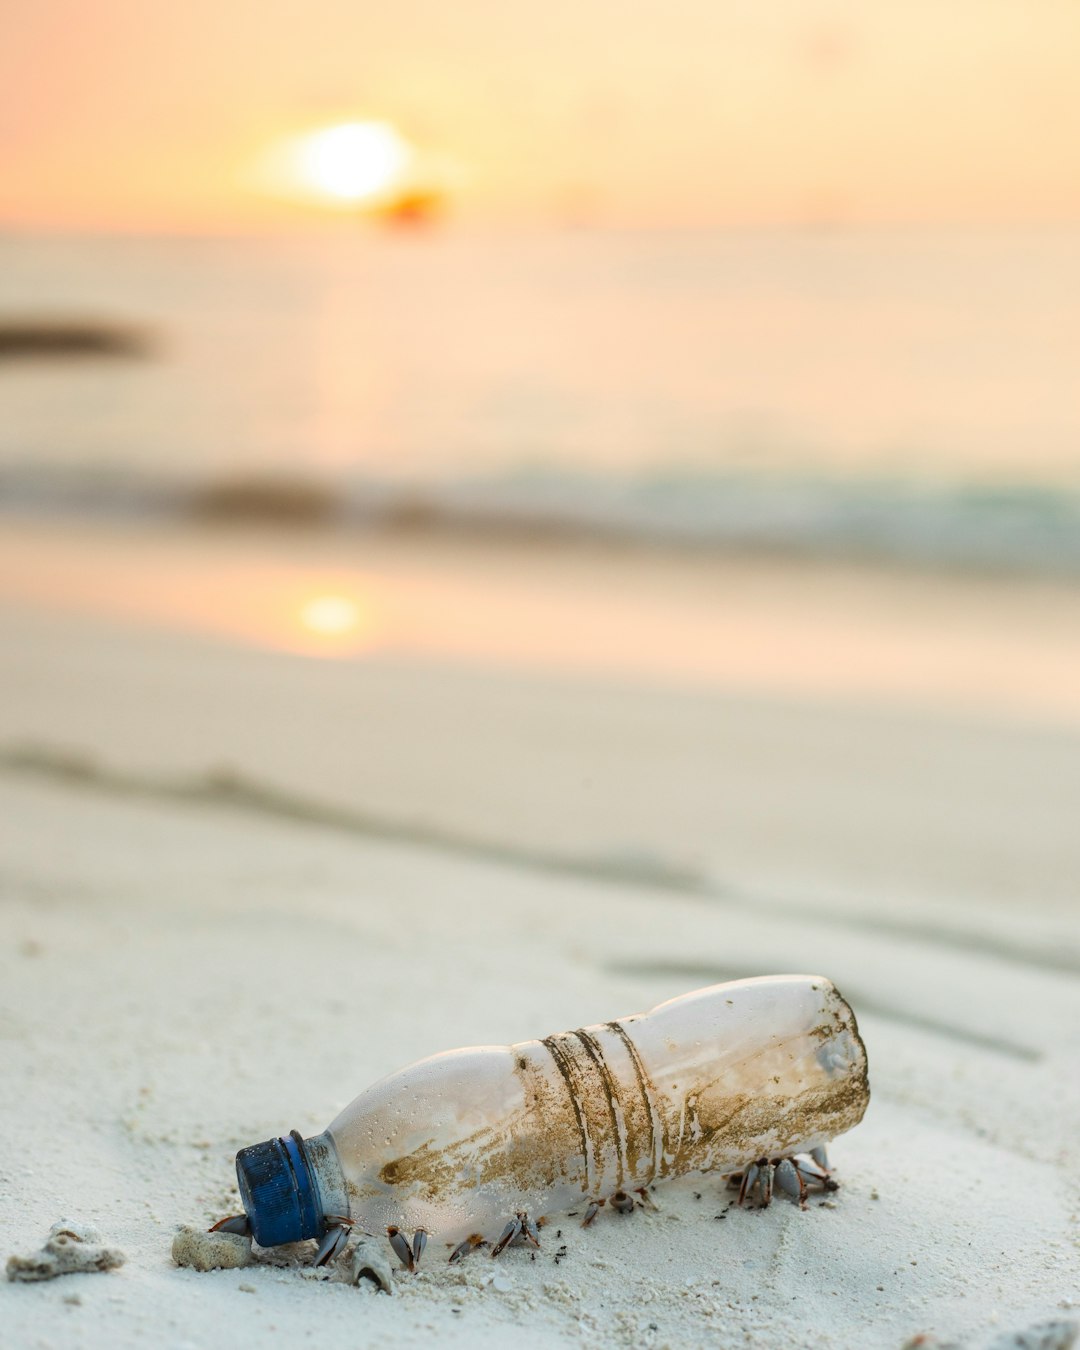 mushrooms grow in poop, animal waste, clear plastic bottle beside beach